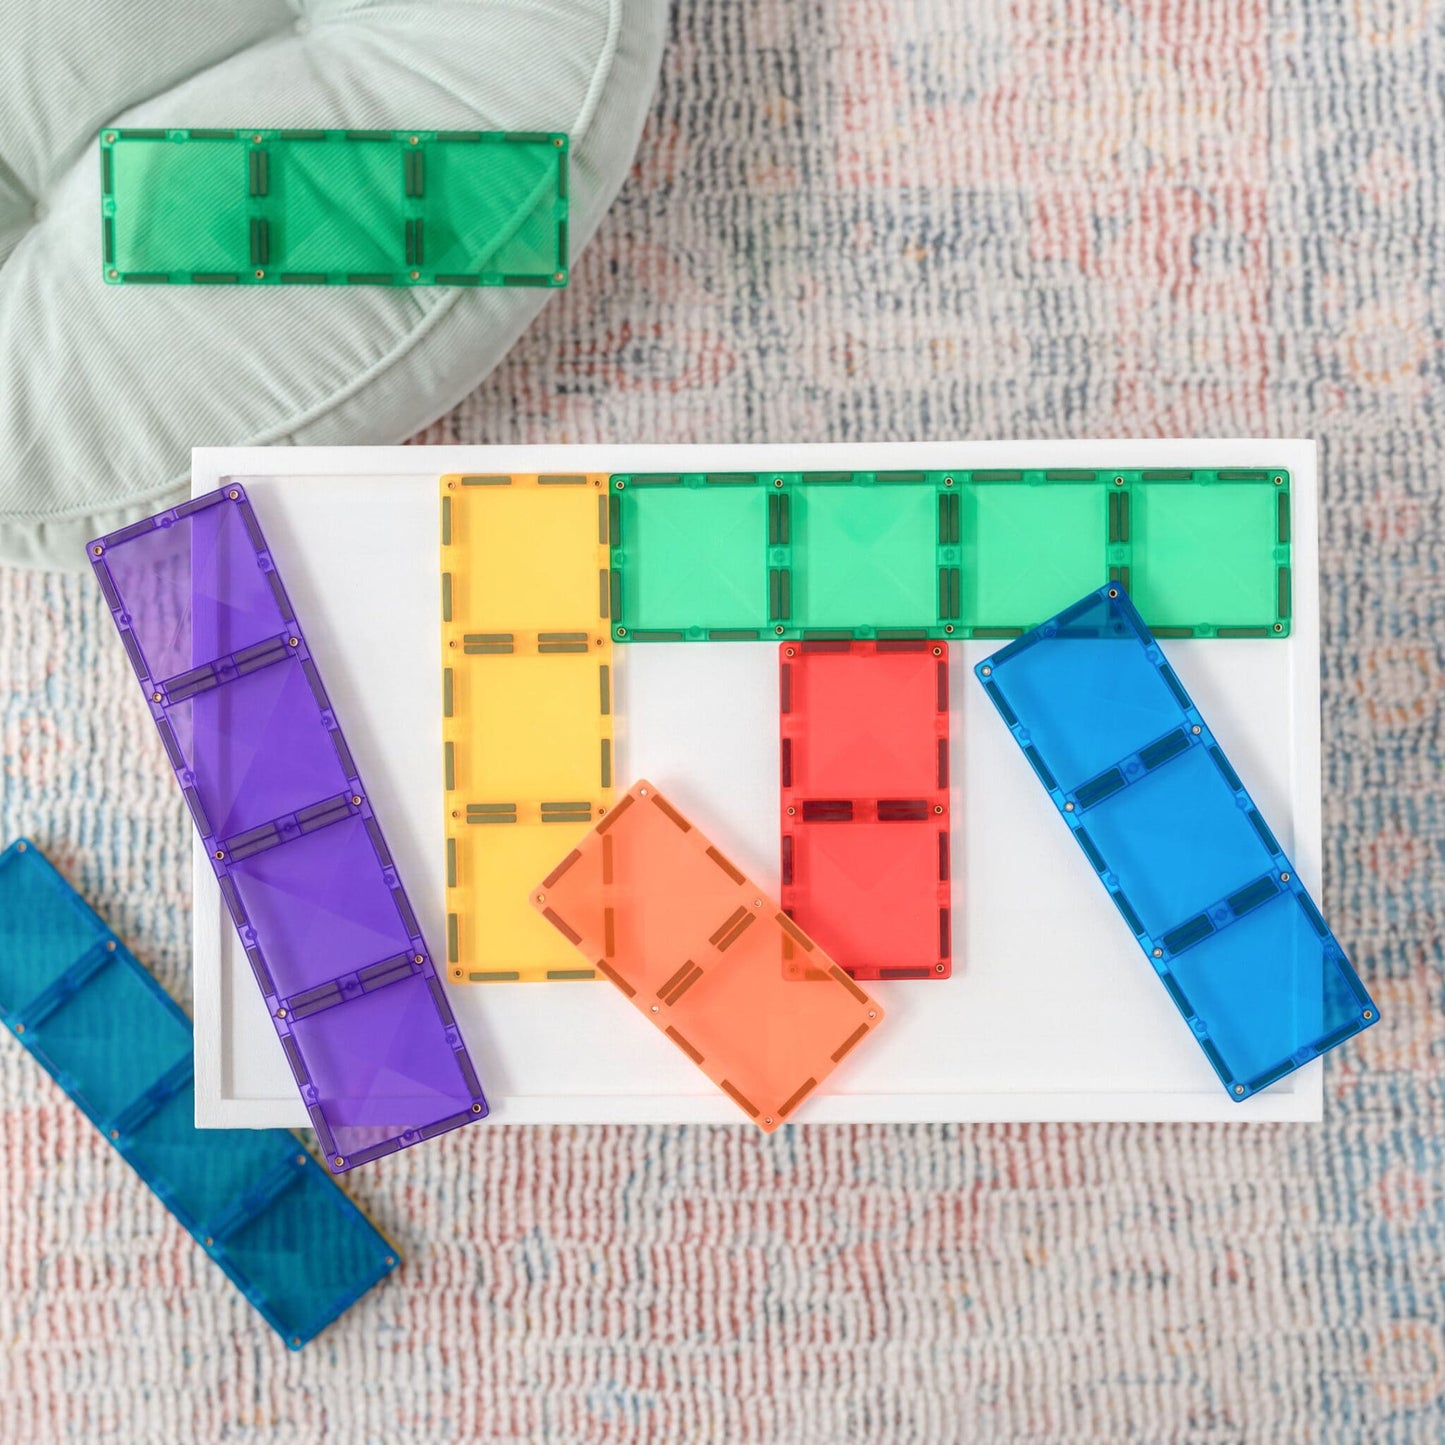 18 Piece Rainbow Rectangle Pack - Connetix Tiles